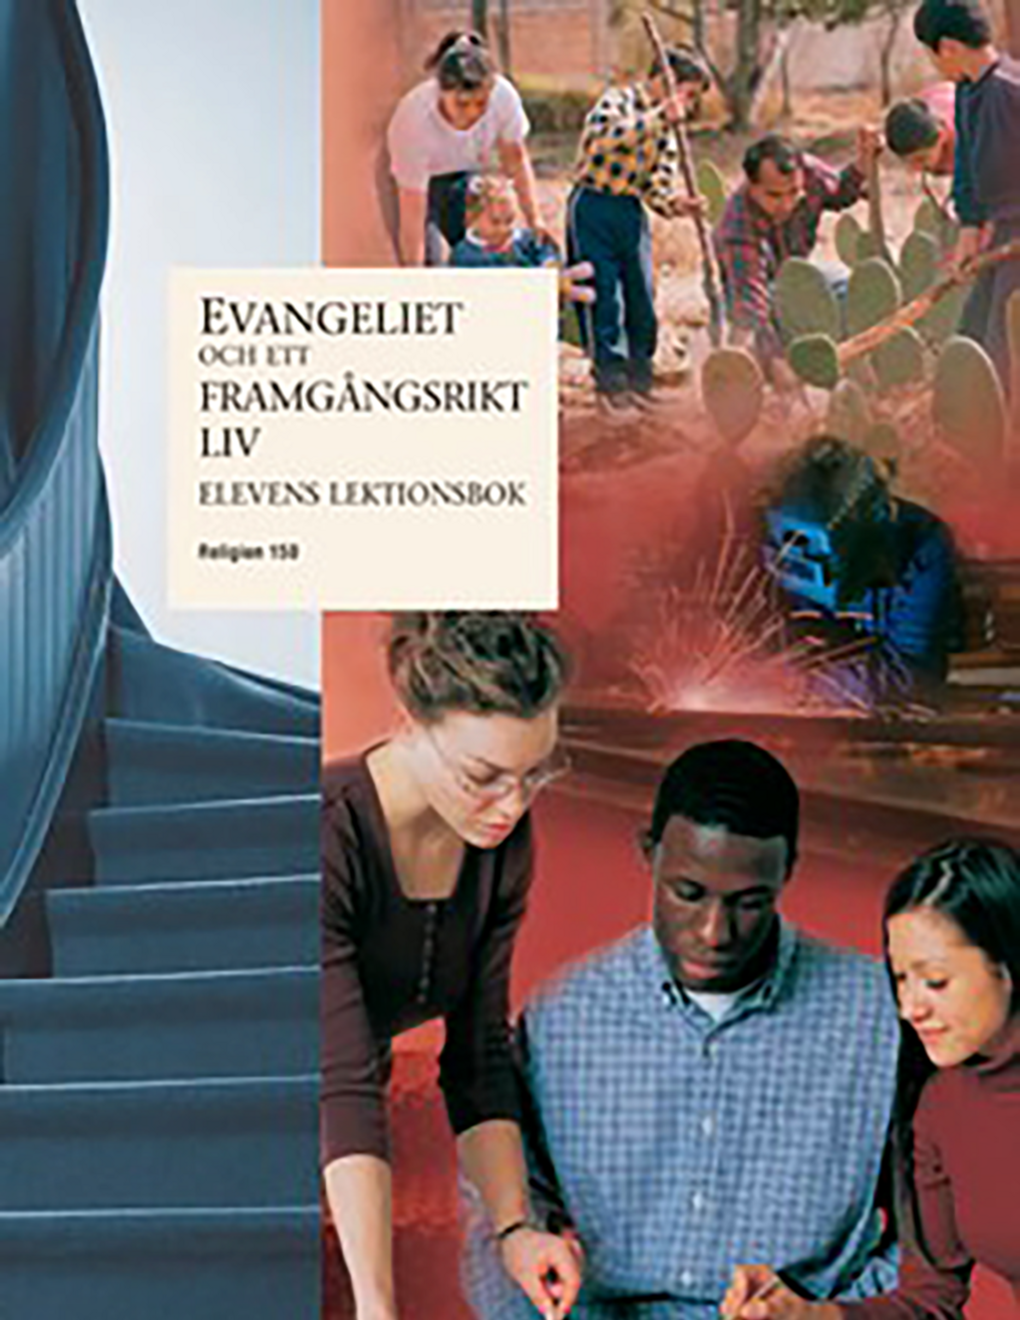 Evangeliet och ett framgångsrikt liv – Elevens lektionsbok (Rel 150)